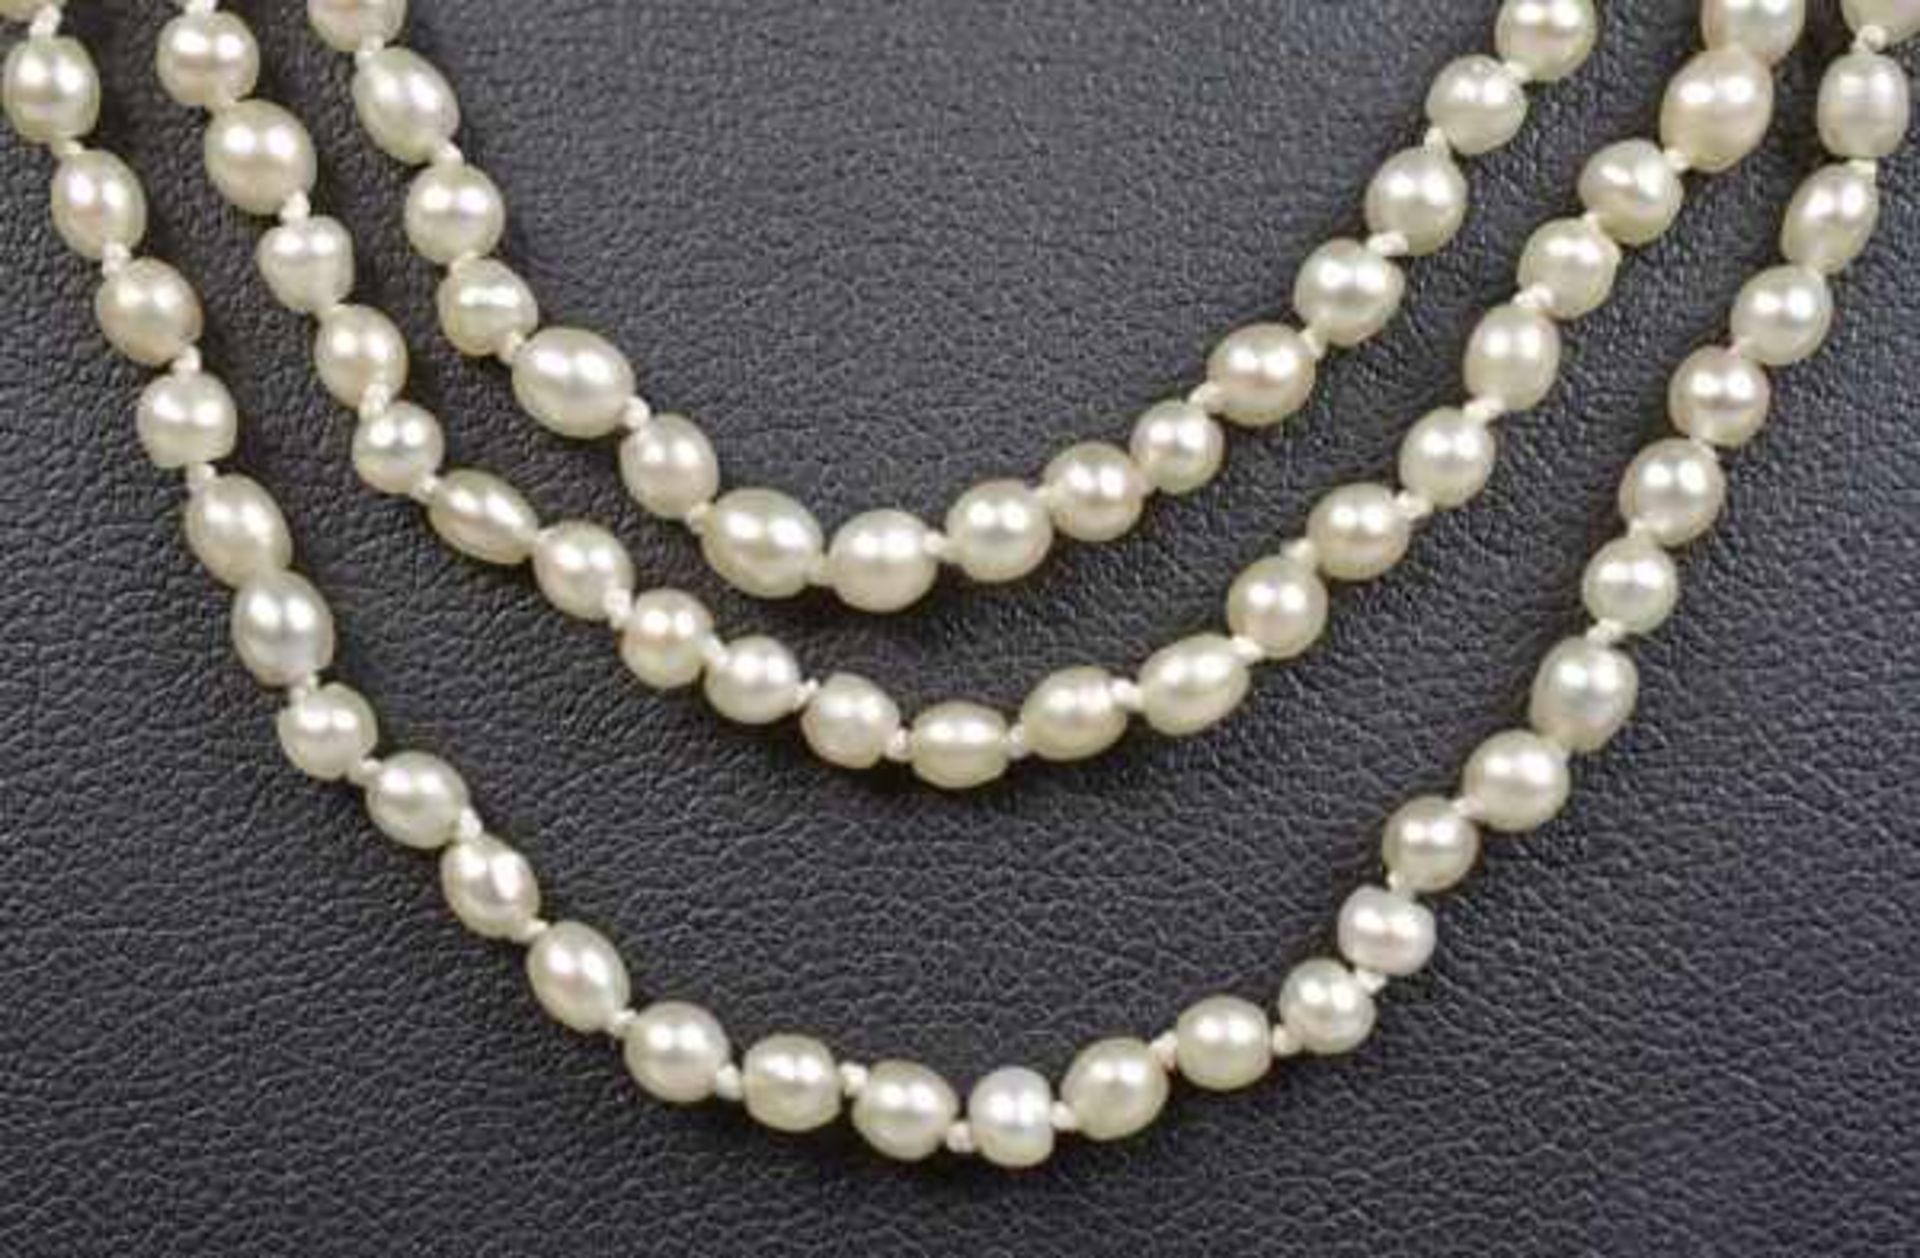 COLLIER Orientperlen in 3 Reihen, 2-4mm, gesamt um 350 Perlen, Kastenschloß mit Emaildekor und